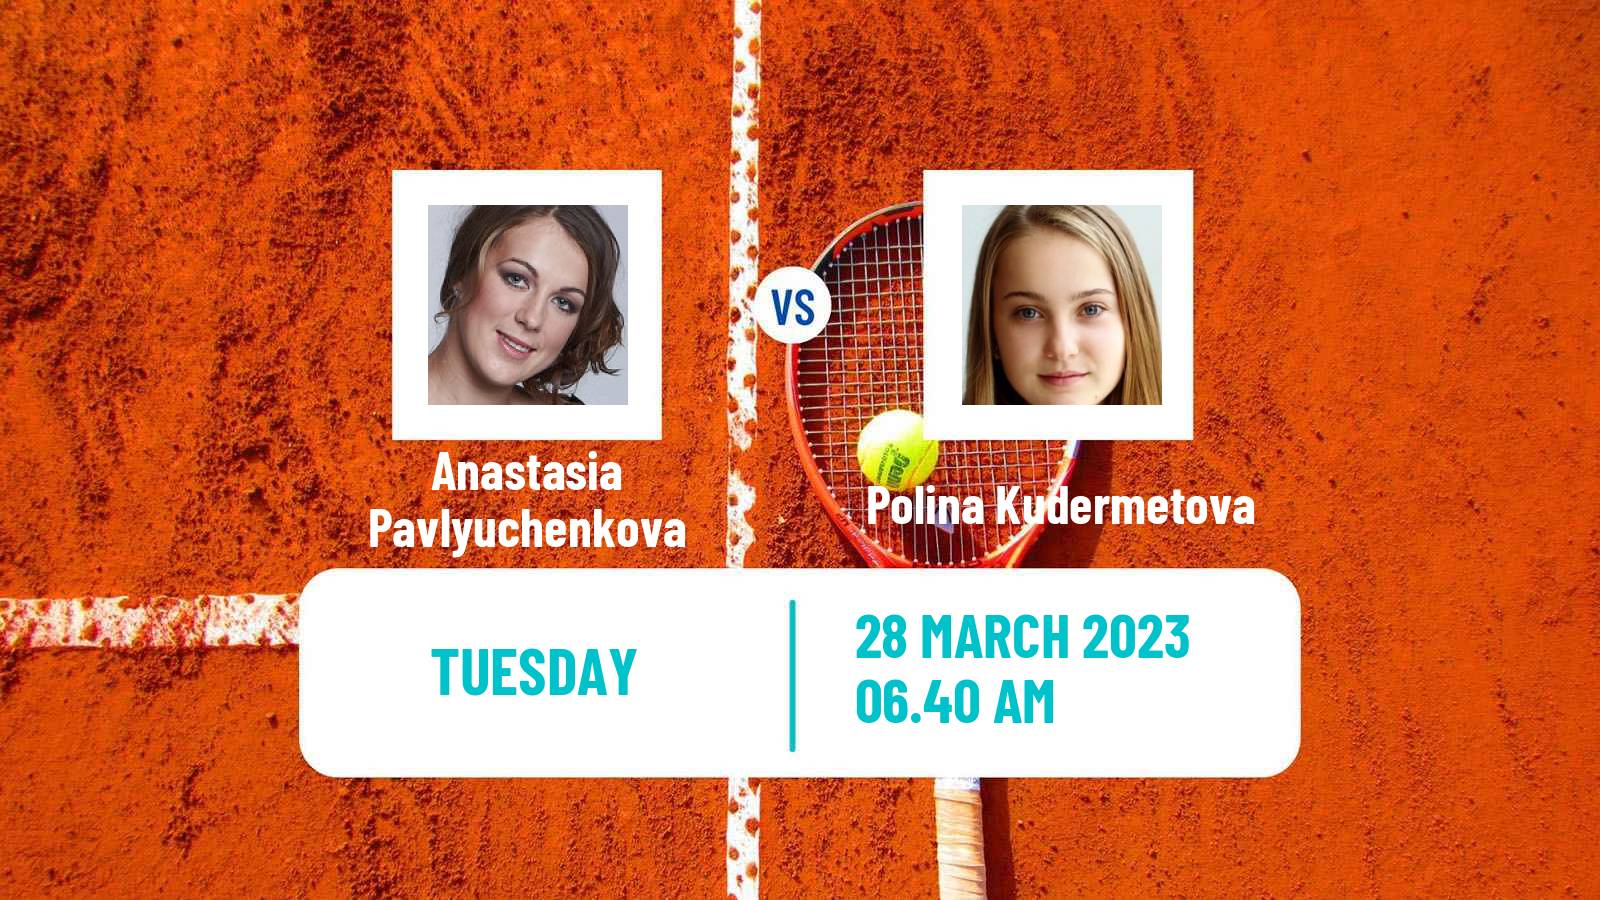 Tennis ITF Tournaments Anastasia Pavlyuchenkova - Polina Kudermetova